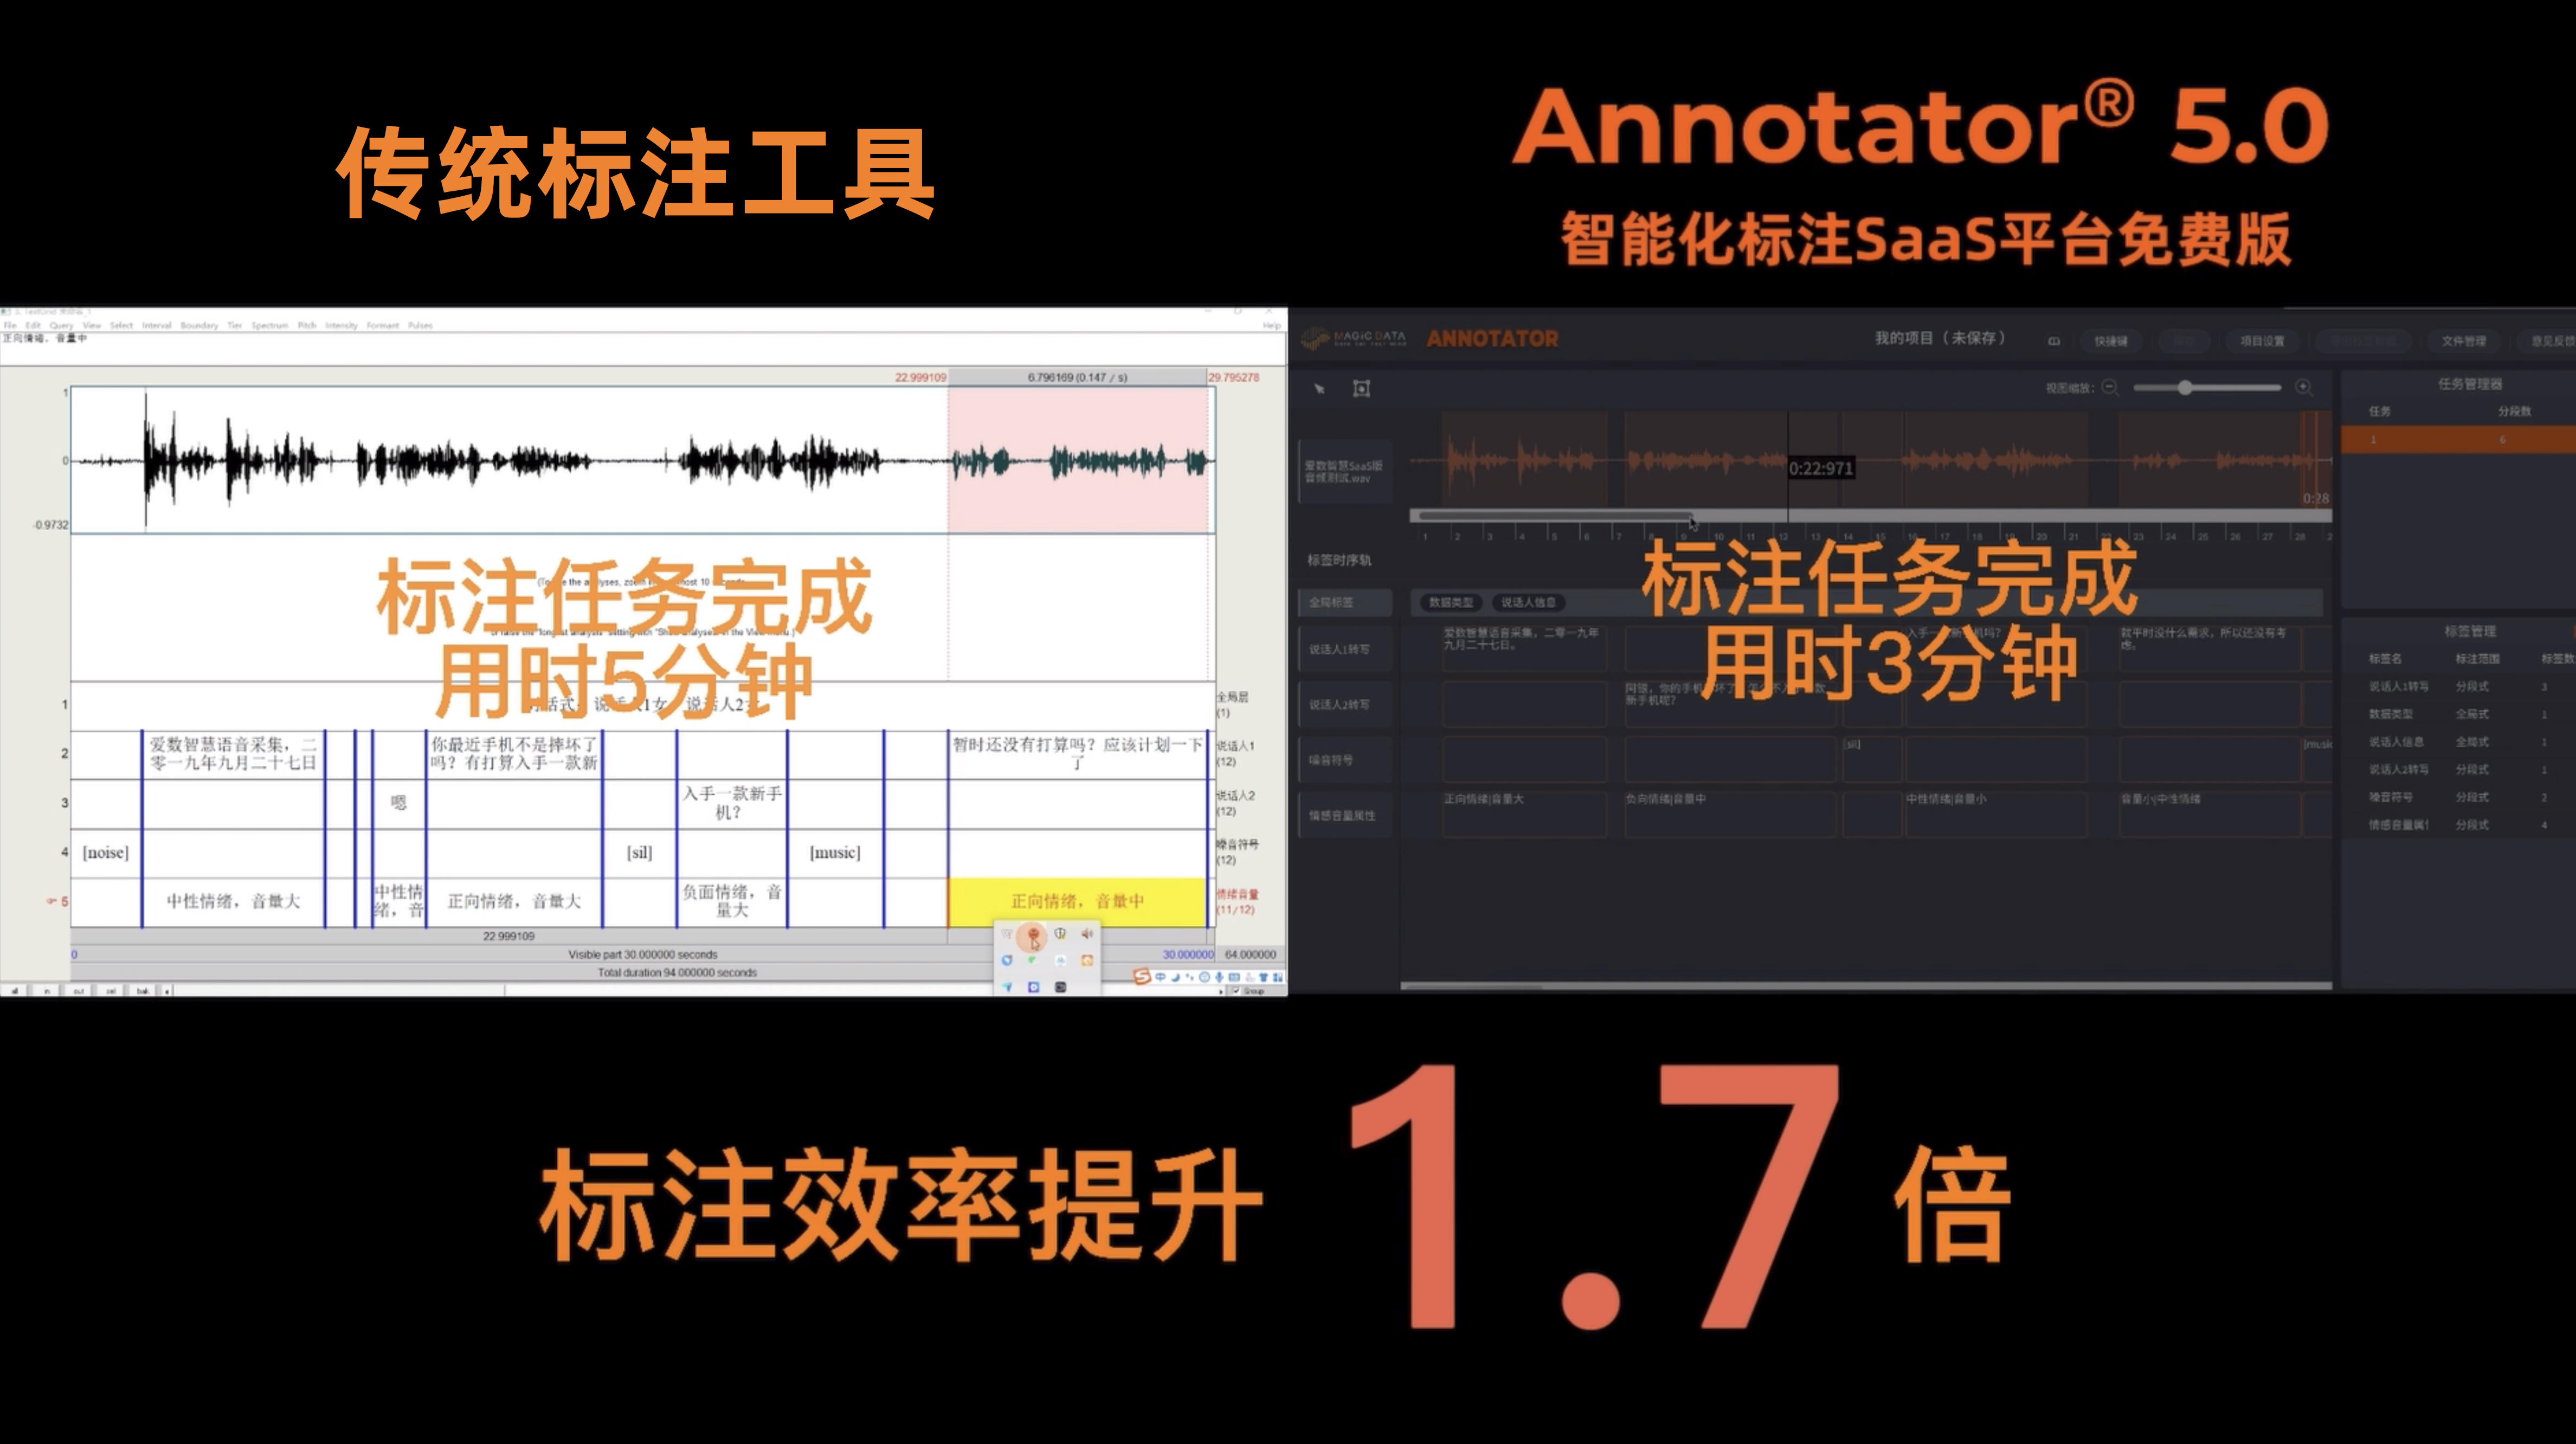 爱数智慧正式上线SaaS免费标注平台-Annotator® 5.0